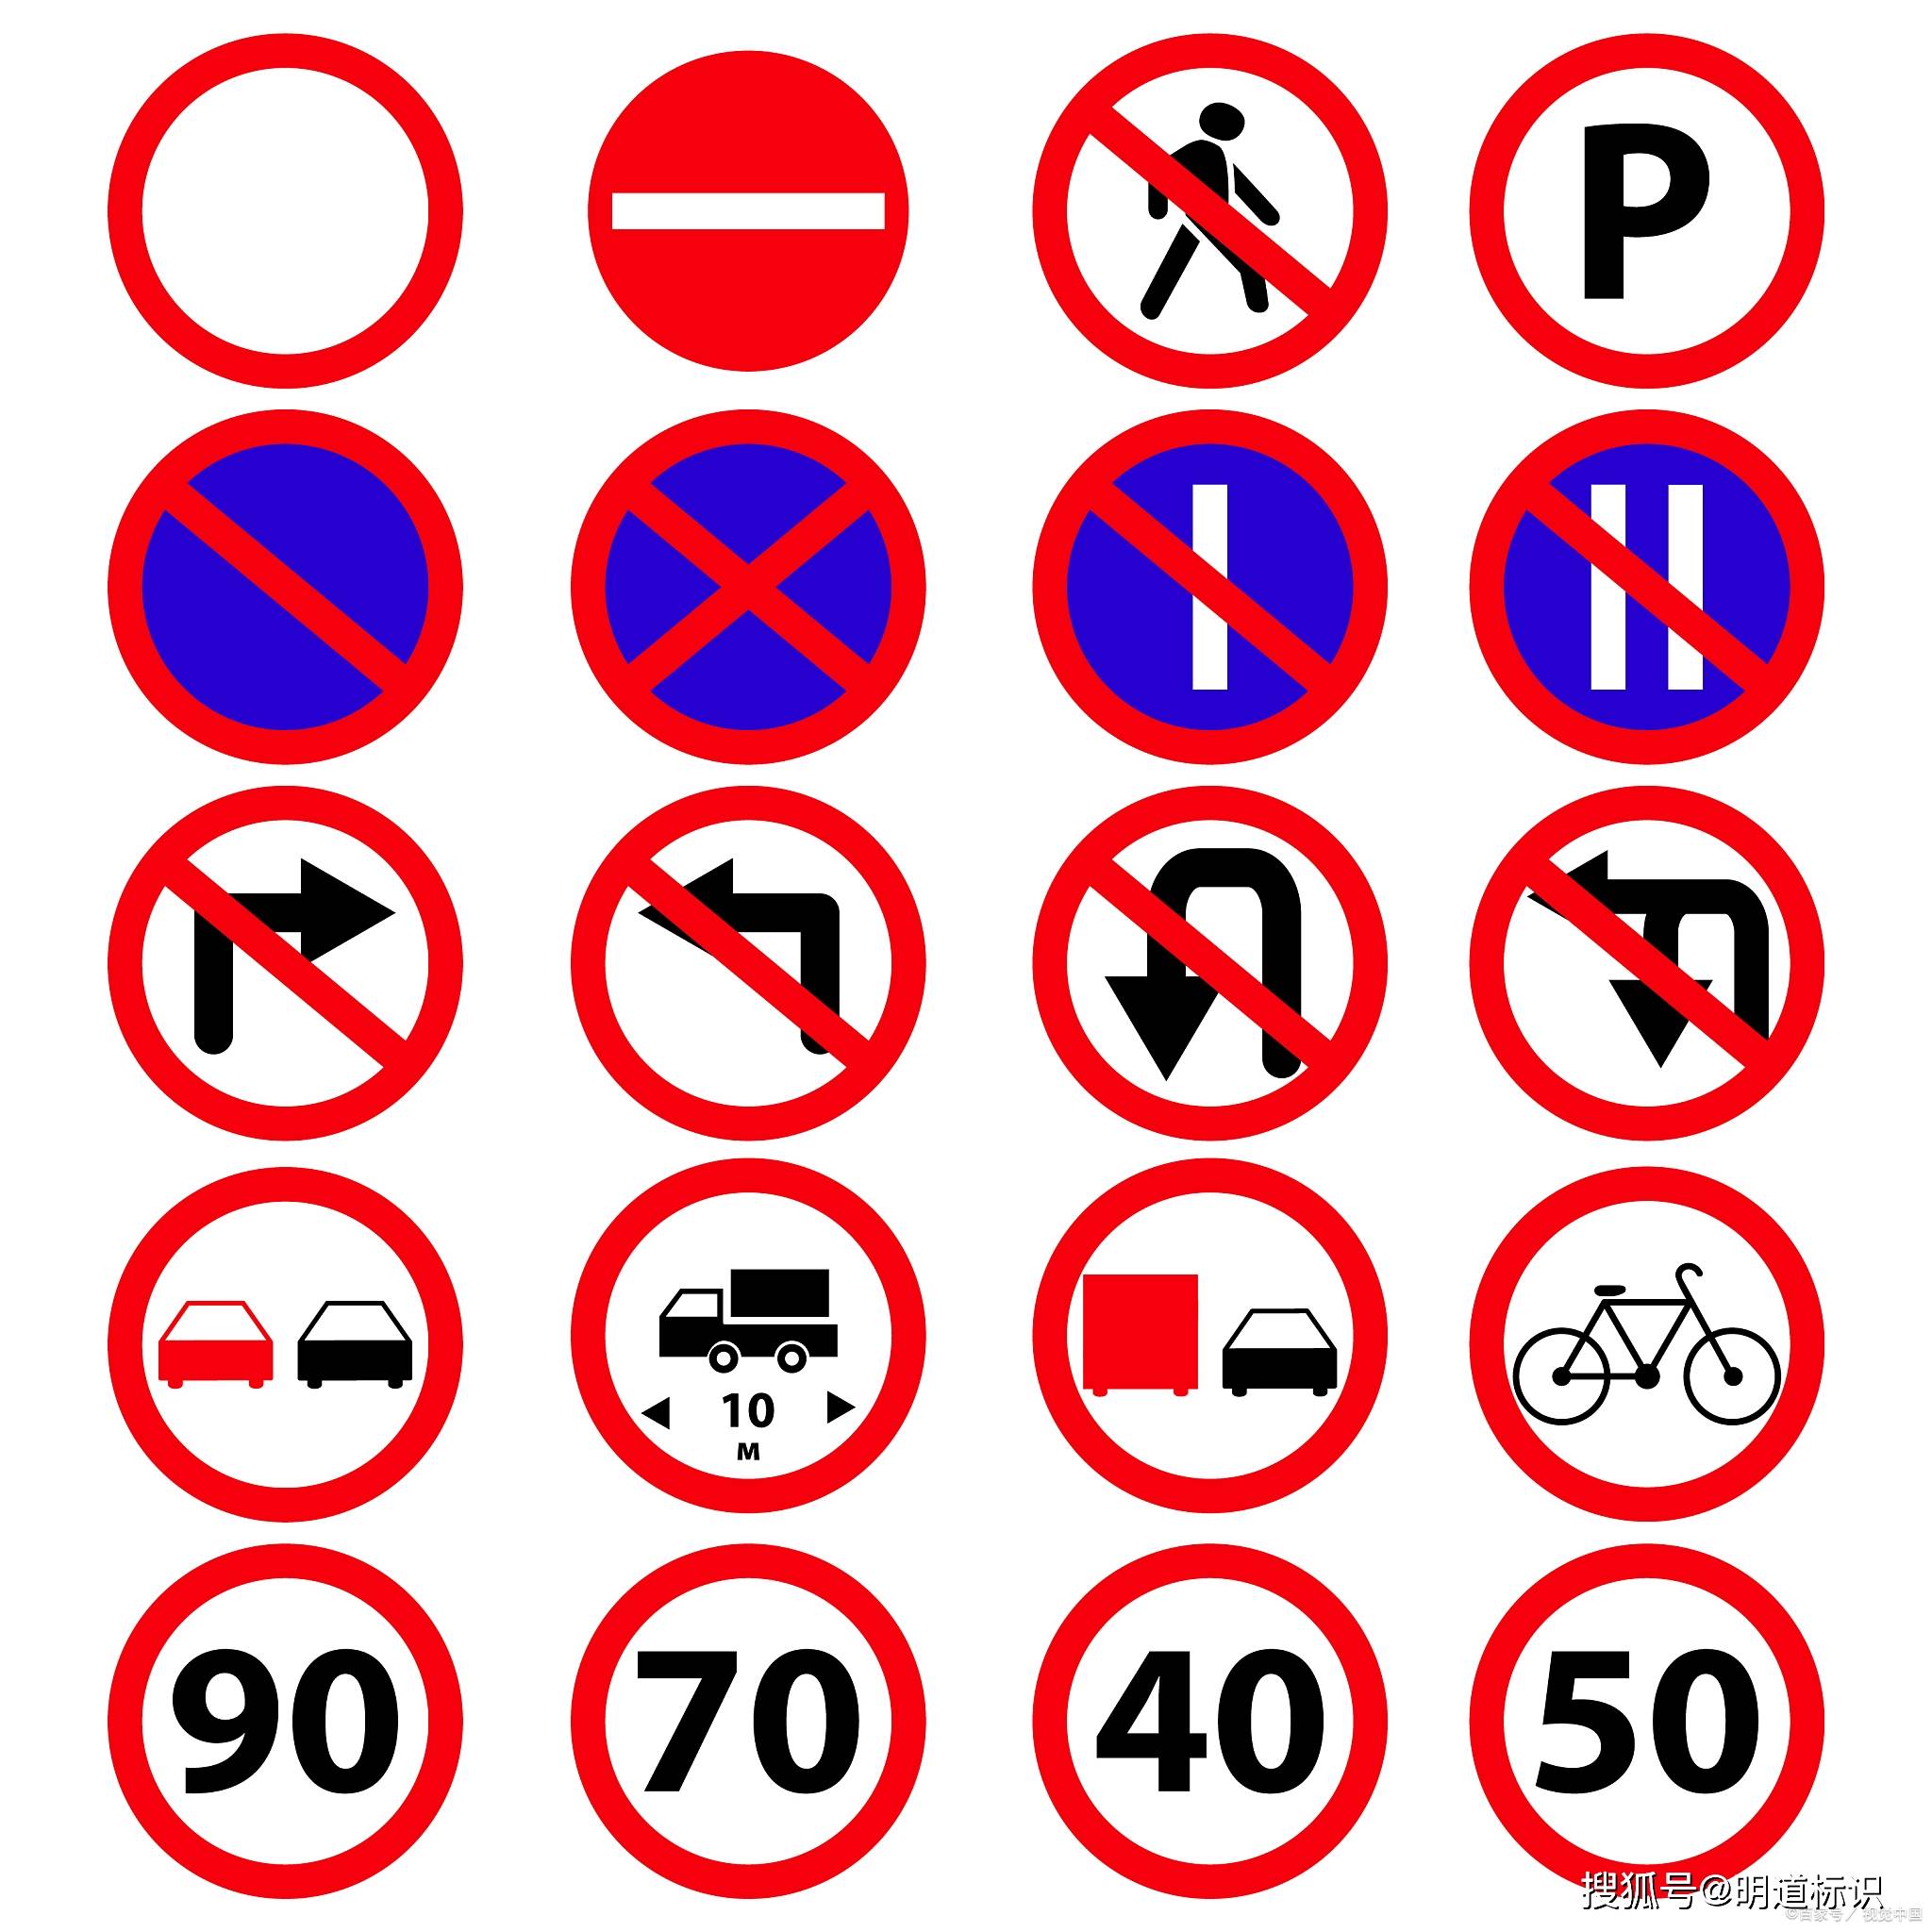 五,距离提示,这种道路交通标志牌在市区是相对少见的,但是在火速公路